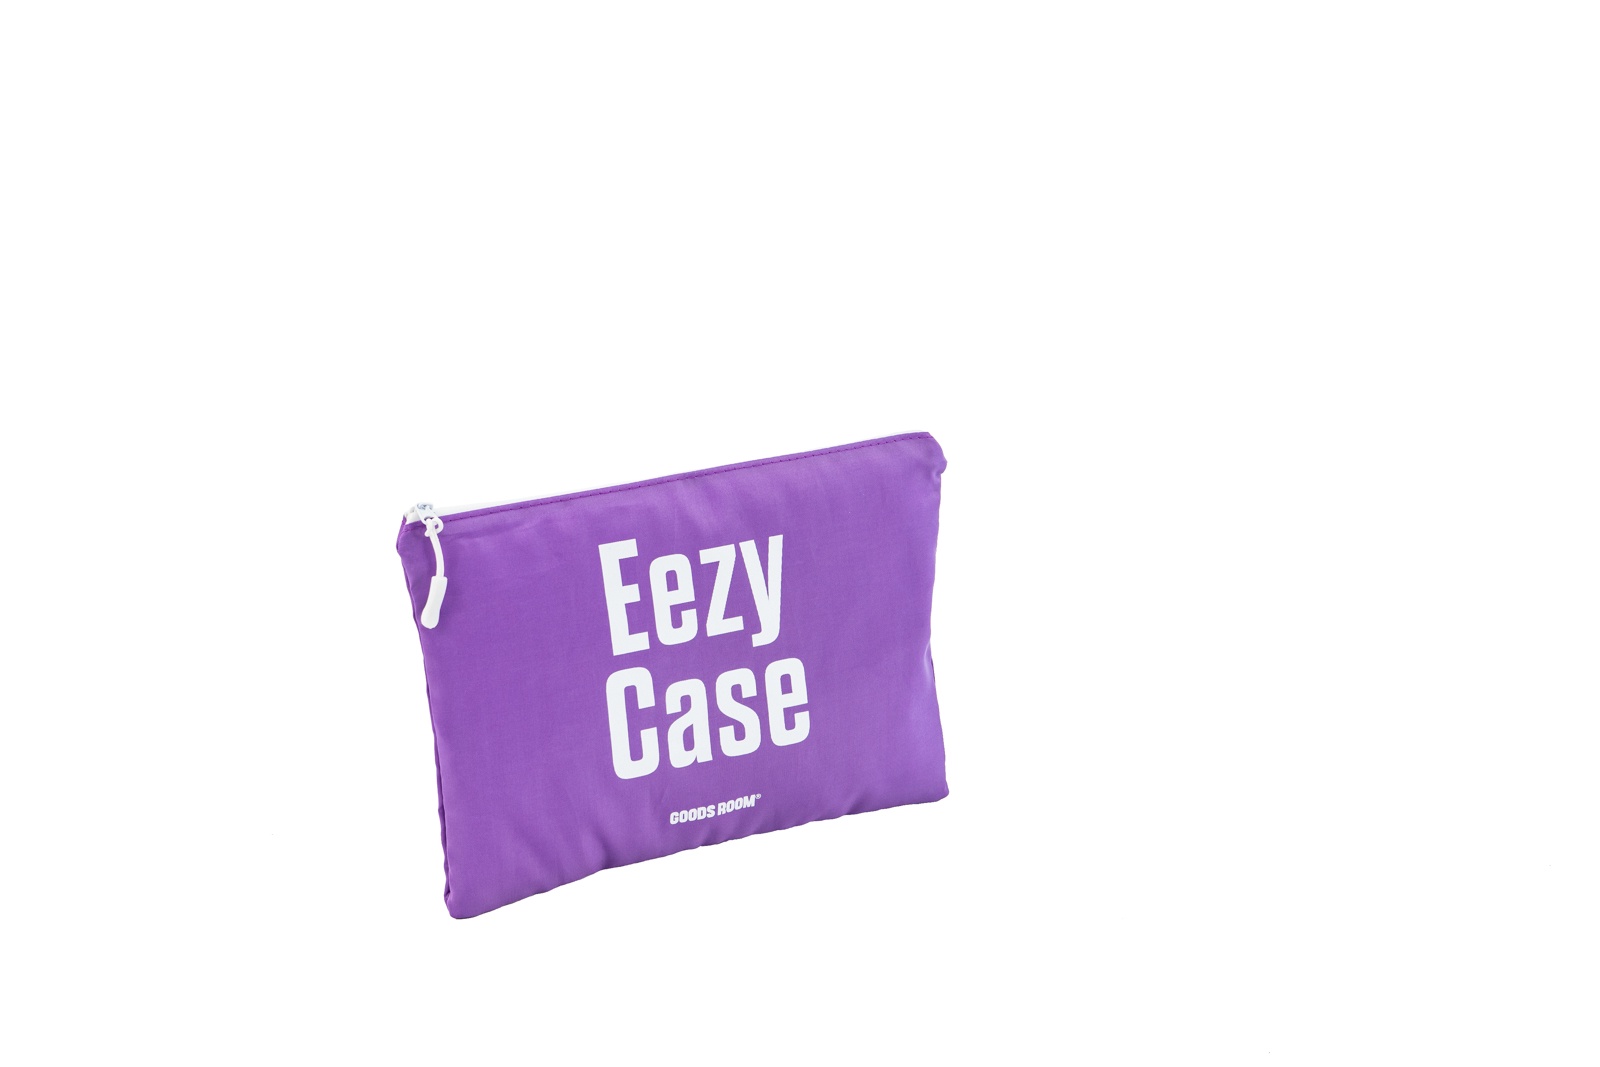 фото Eezy Case - Система хранения вещей в чемодане. Gr